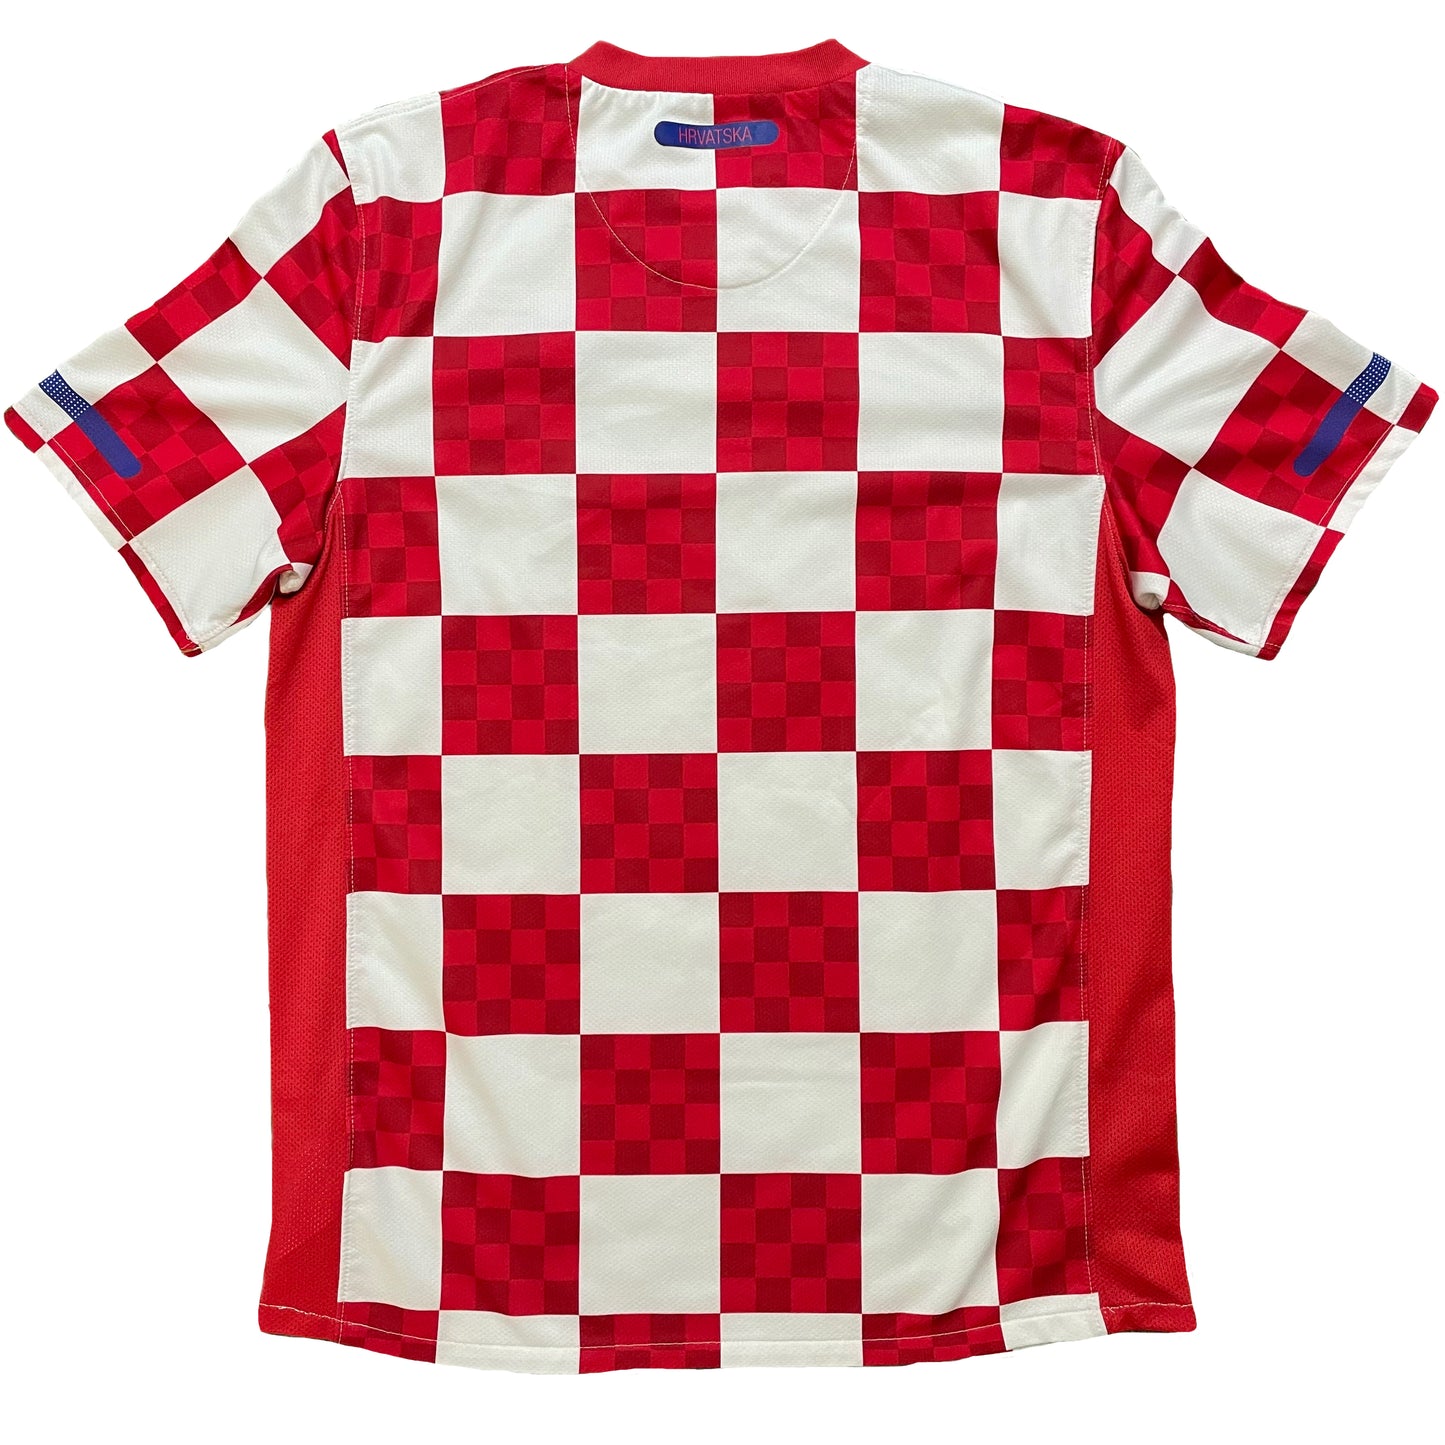 2009-2010 Croatia home shirt (M)